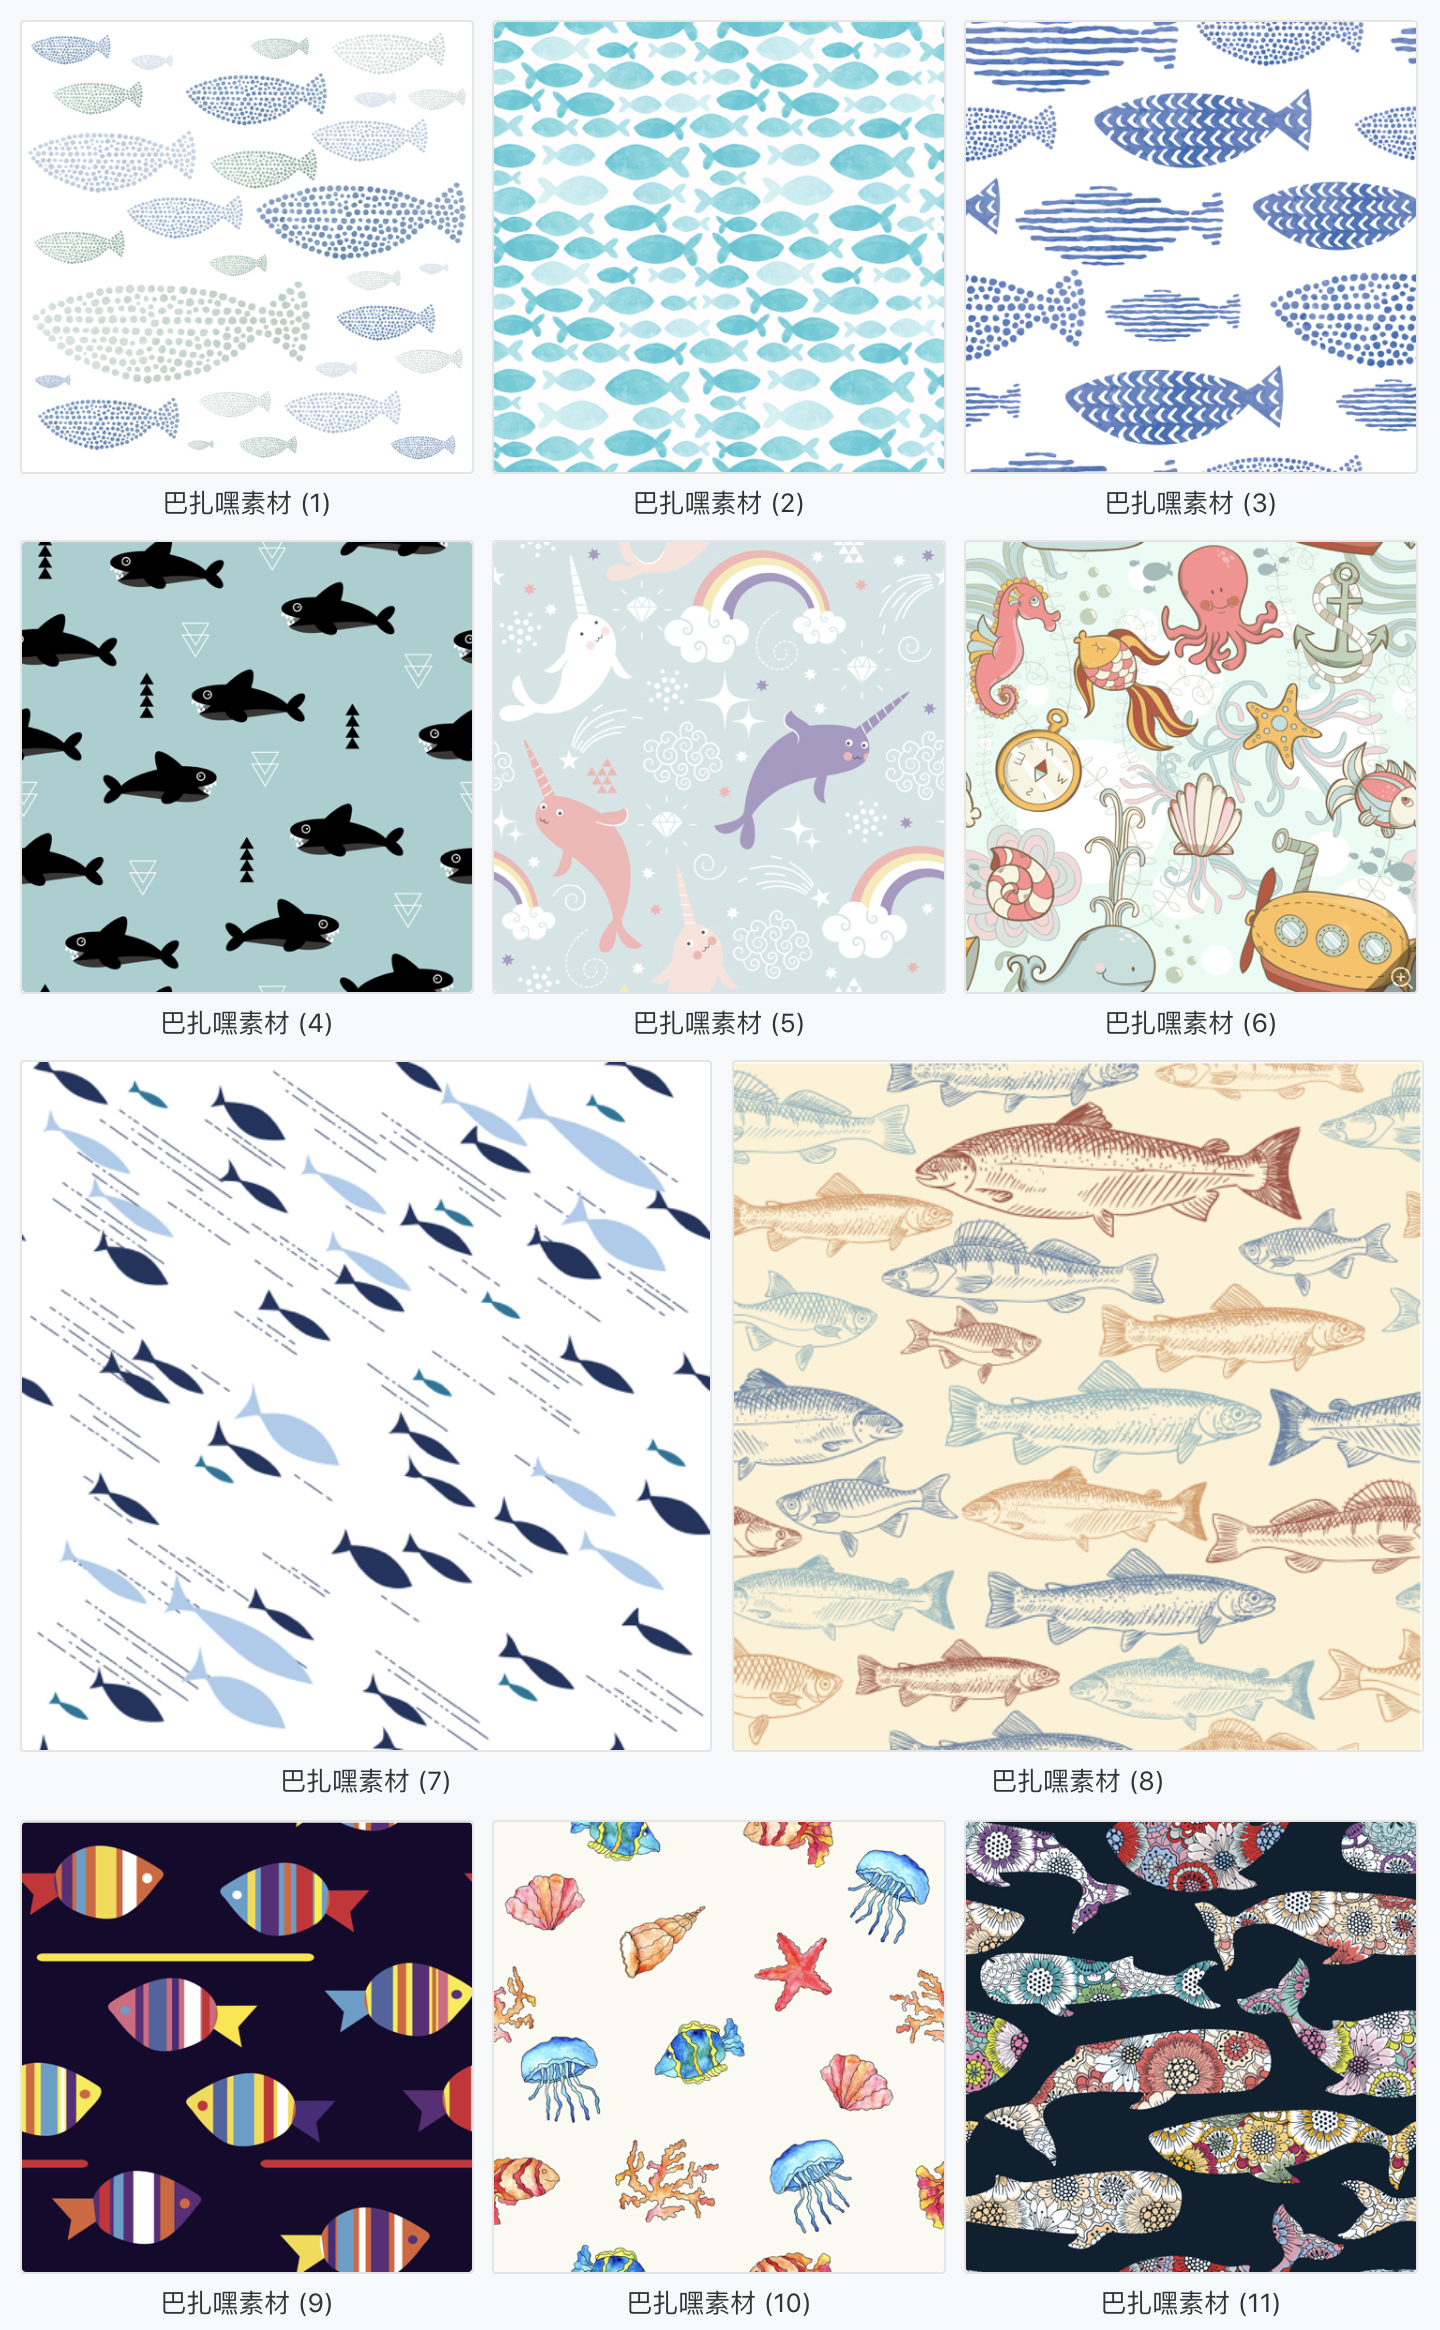 【海洋背景】卡通可爱儿童插画海洋世界海底生物鲸鱼无缝背景图AI矢量素材